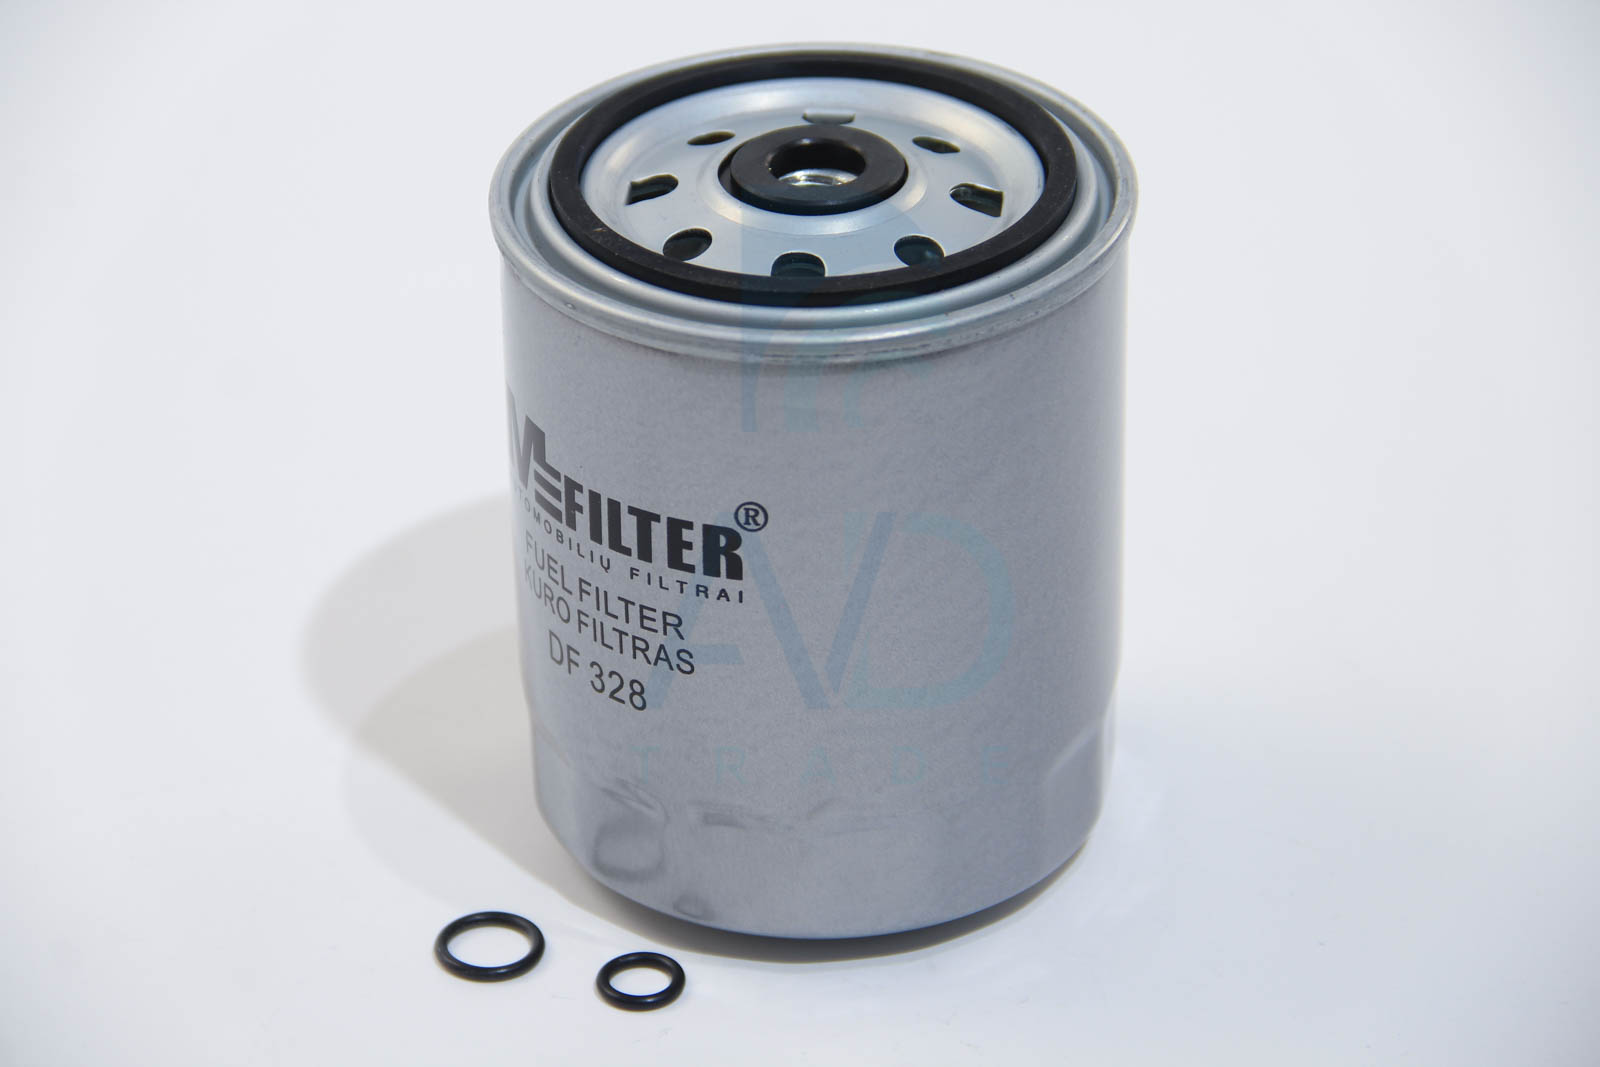 Фильтр топливный MERCEDES (M-Filter) MANN-FILTER арт. DF 328